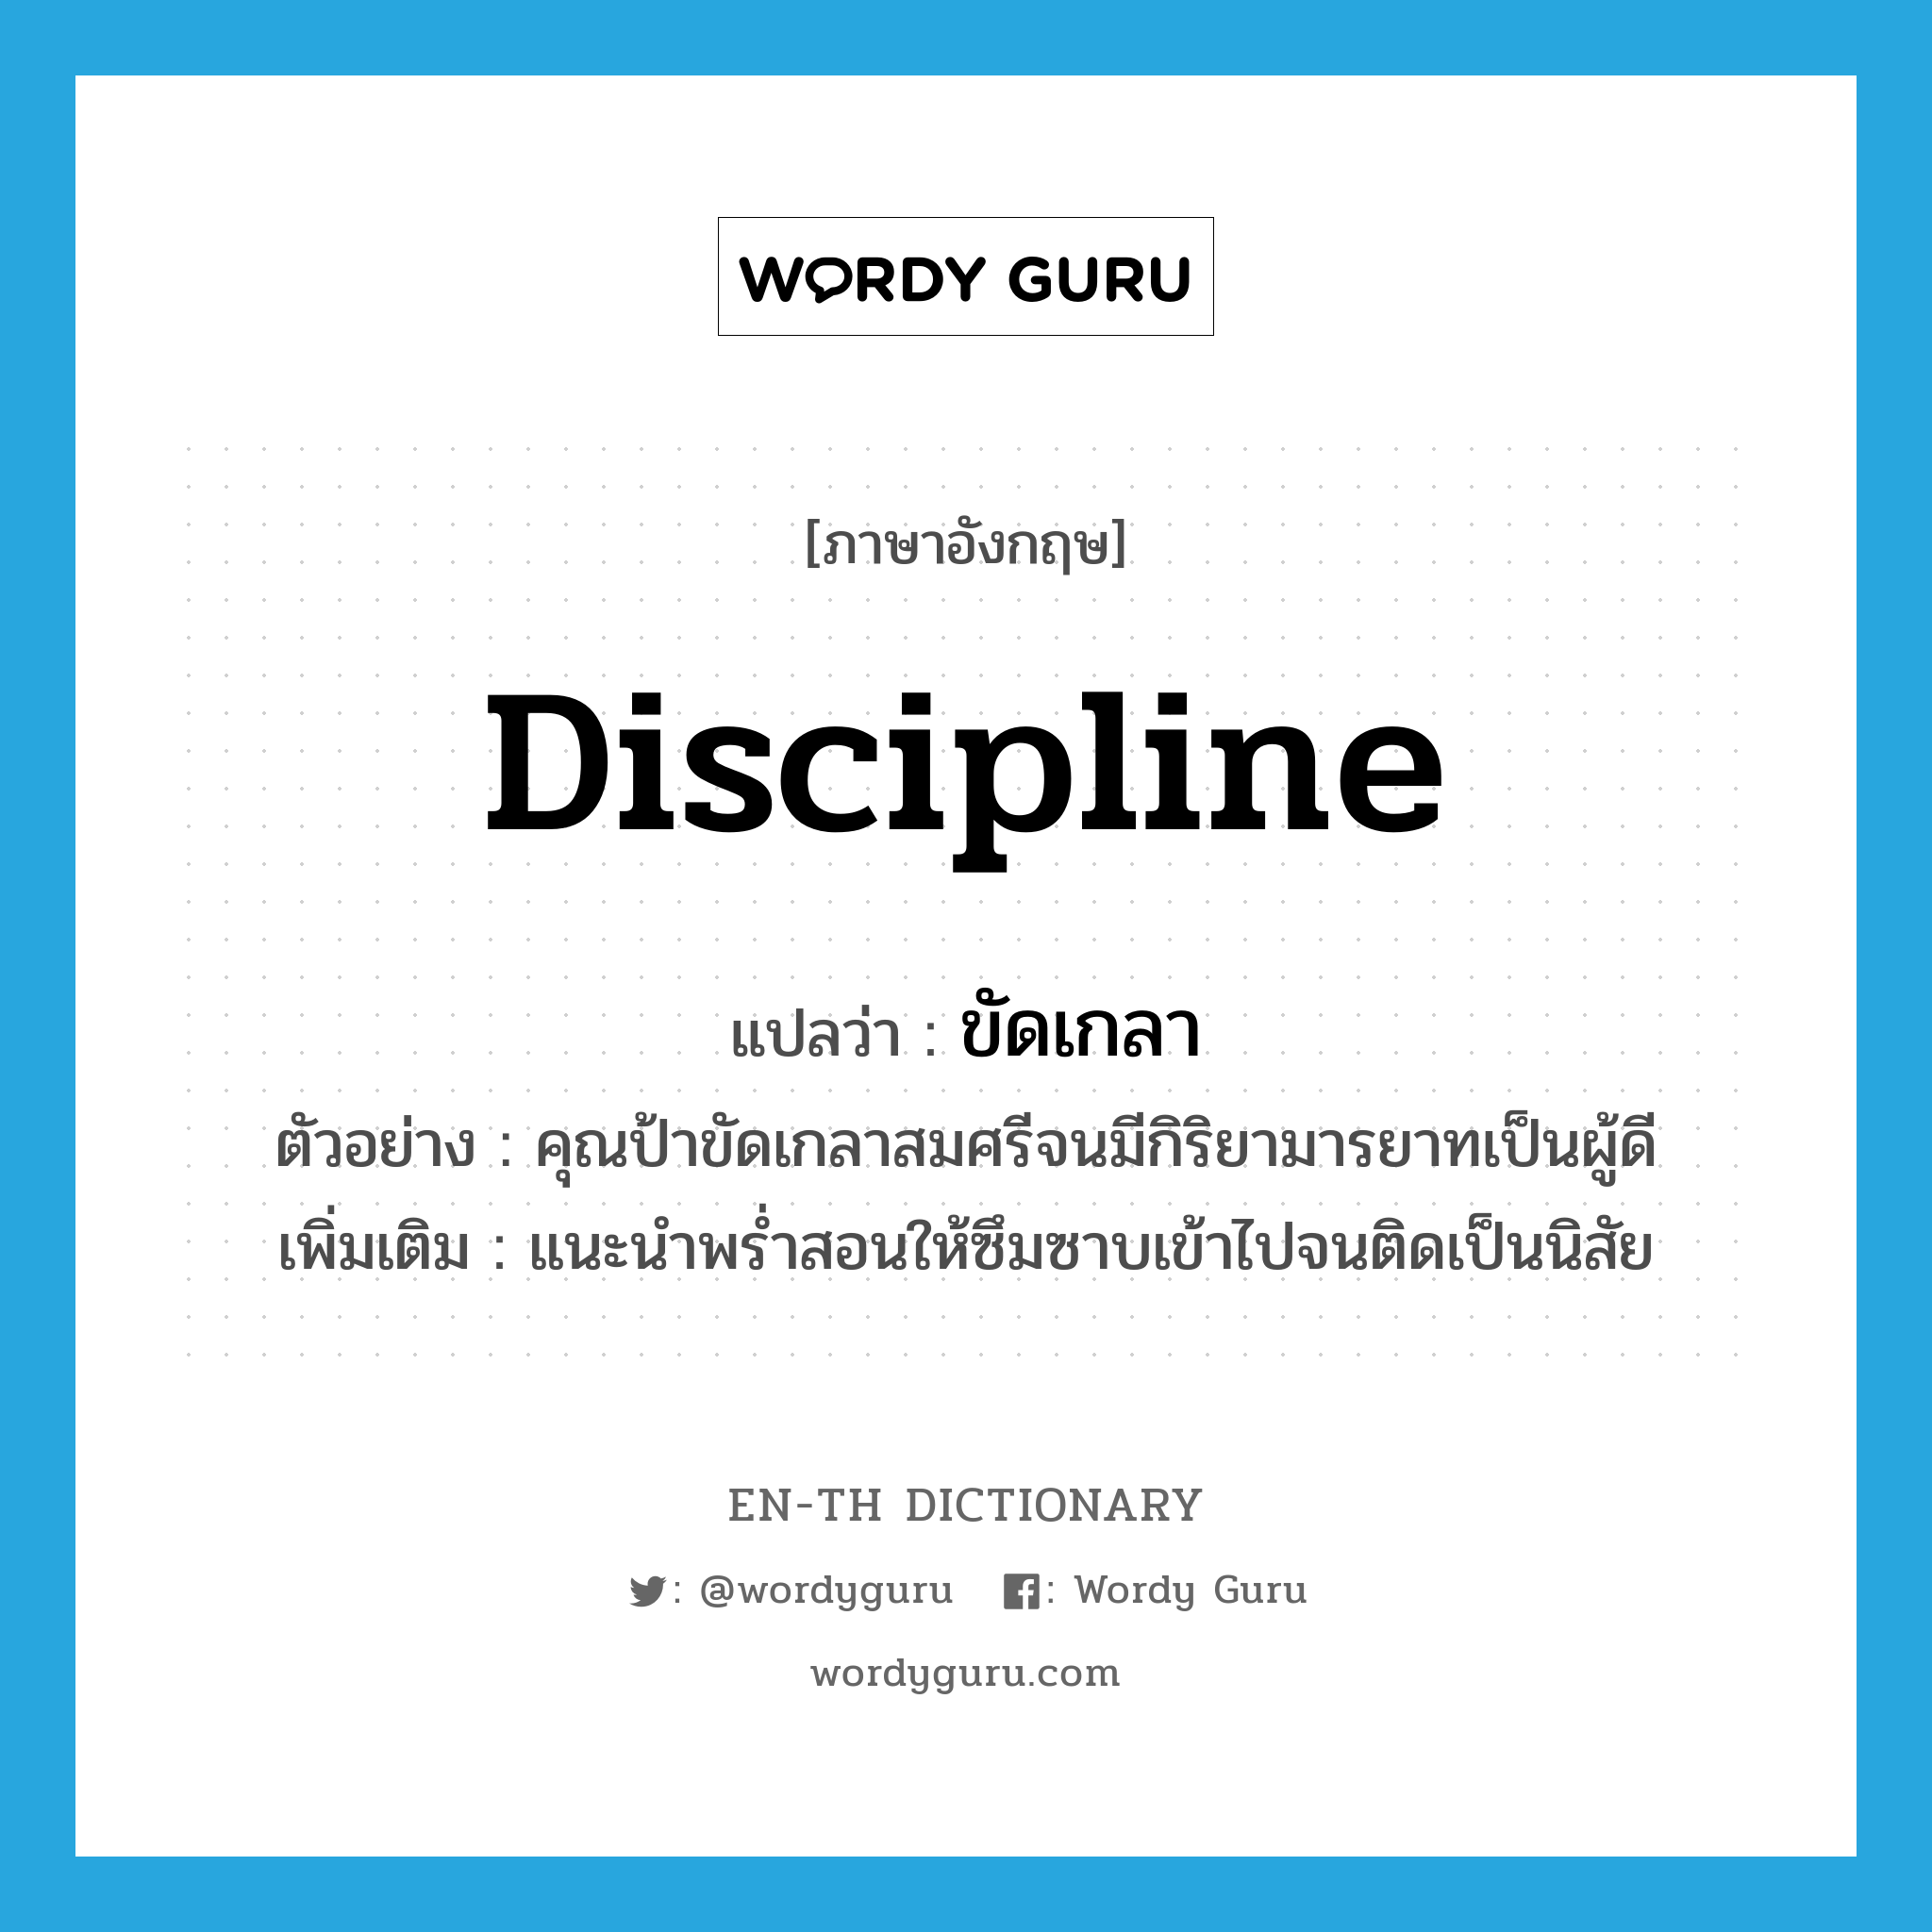 discipline แปลว่า?, คำศัพท์ภาษาอังกฤษ discipline แปลว่า ขัดเกลา ประเภท V ตัวอย่าง คุณป้าขัดเกลาสมศรีจนมีกิริยามารยาทเป็นผู้ดี เพิ่มเติม แนะนำพร่ำสอนให้ซึมซาบเข้าไปจนติดเป็นนิสัย หมวด V